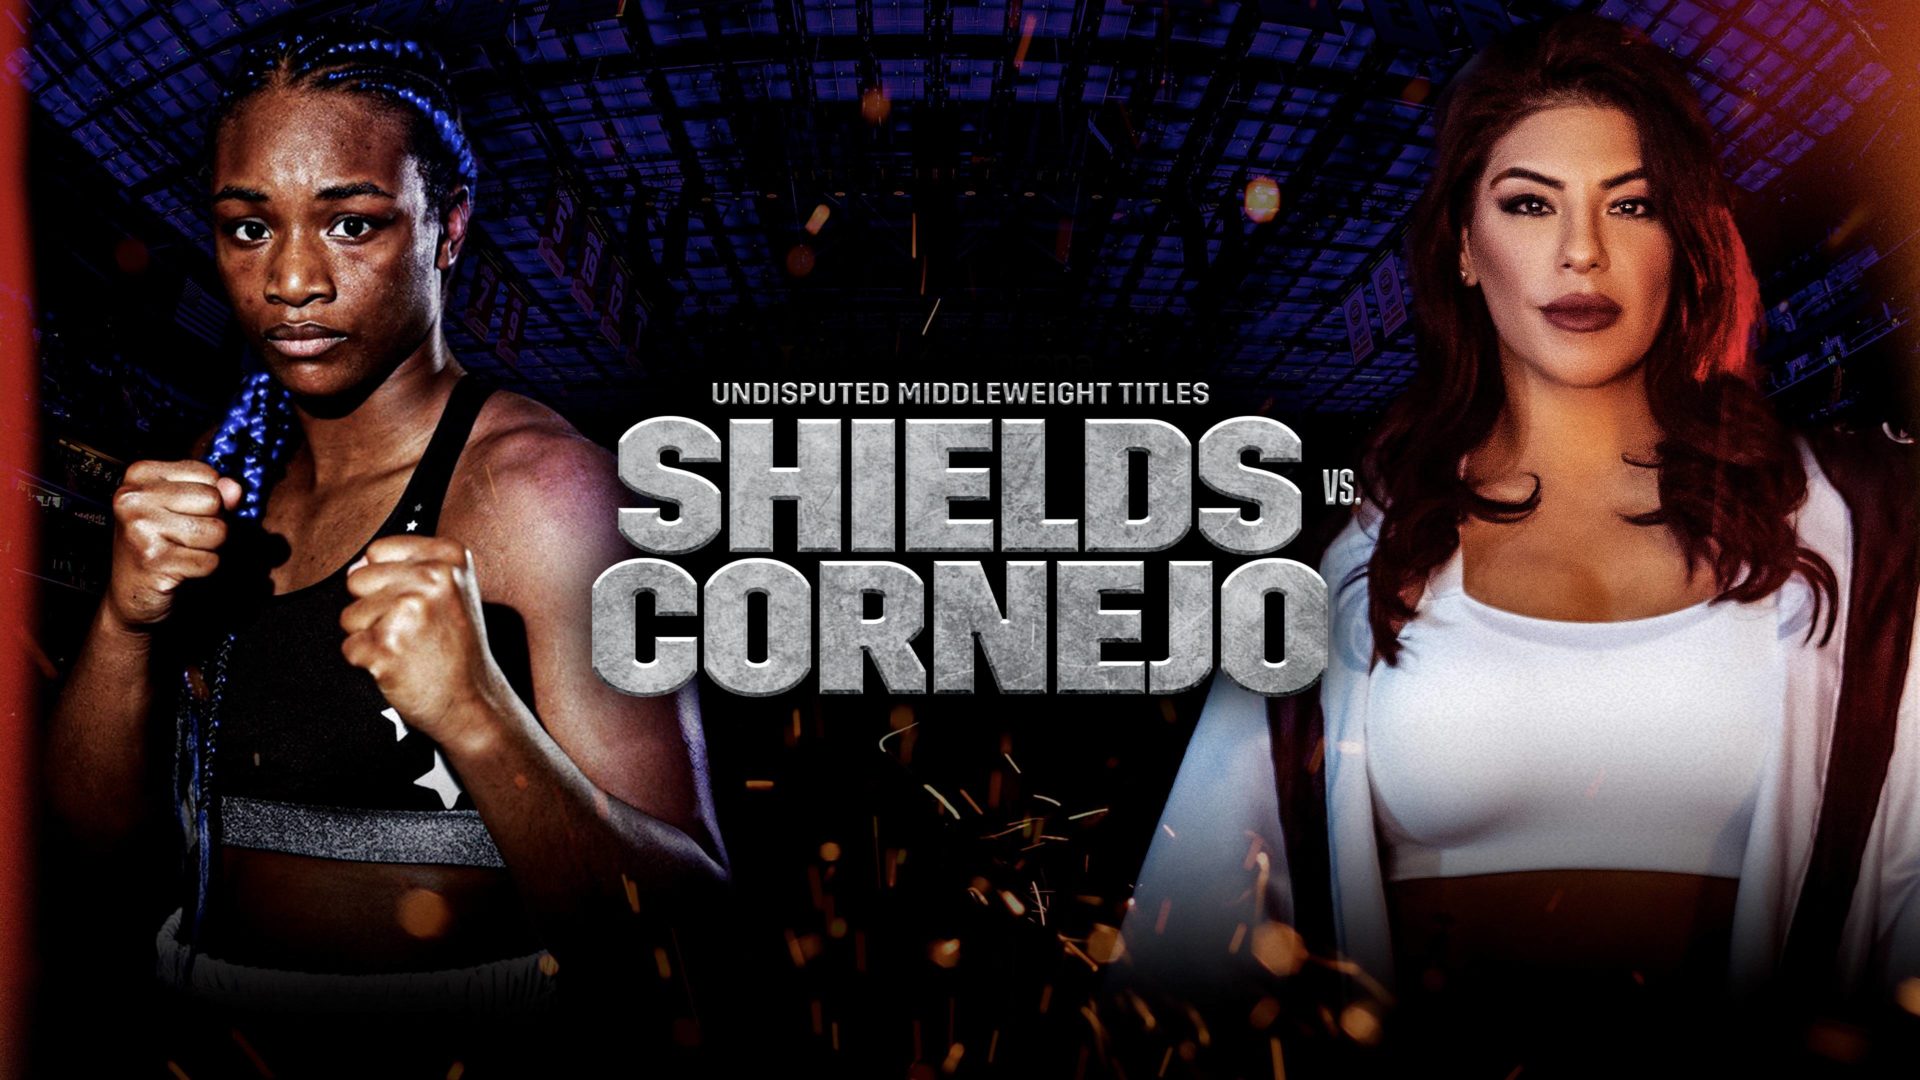 Shields vs Cornejo